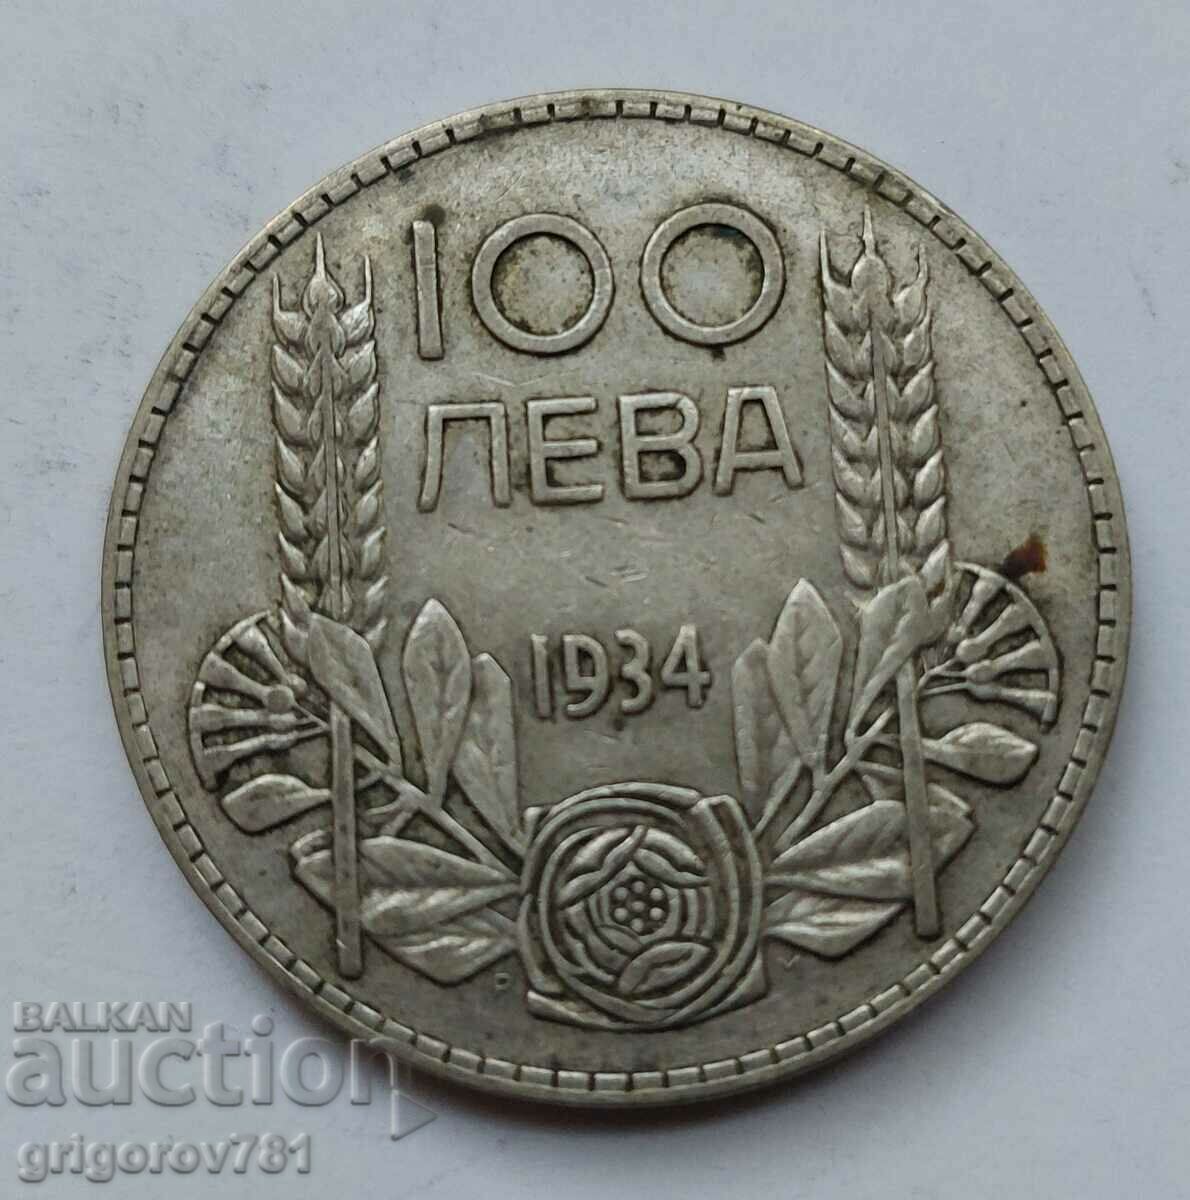 100 leva silver Bulgaria 1934 - silver coin #69